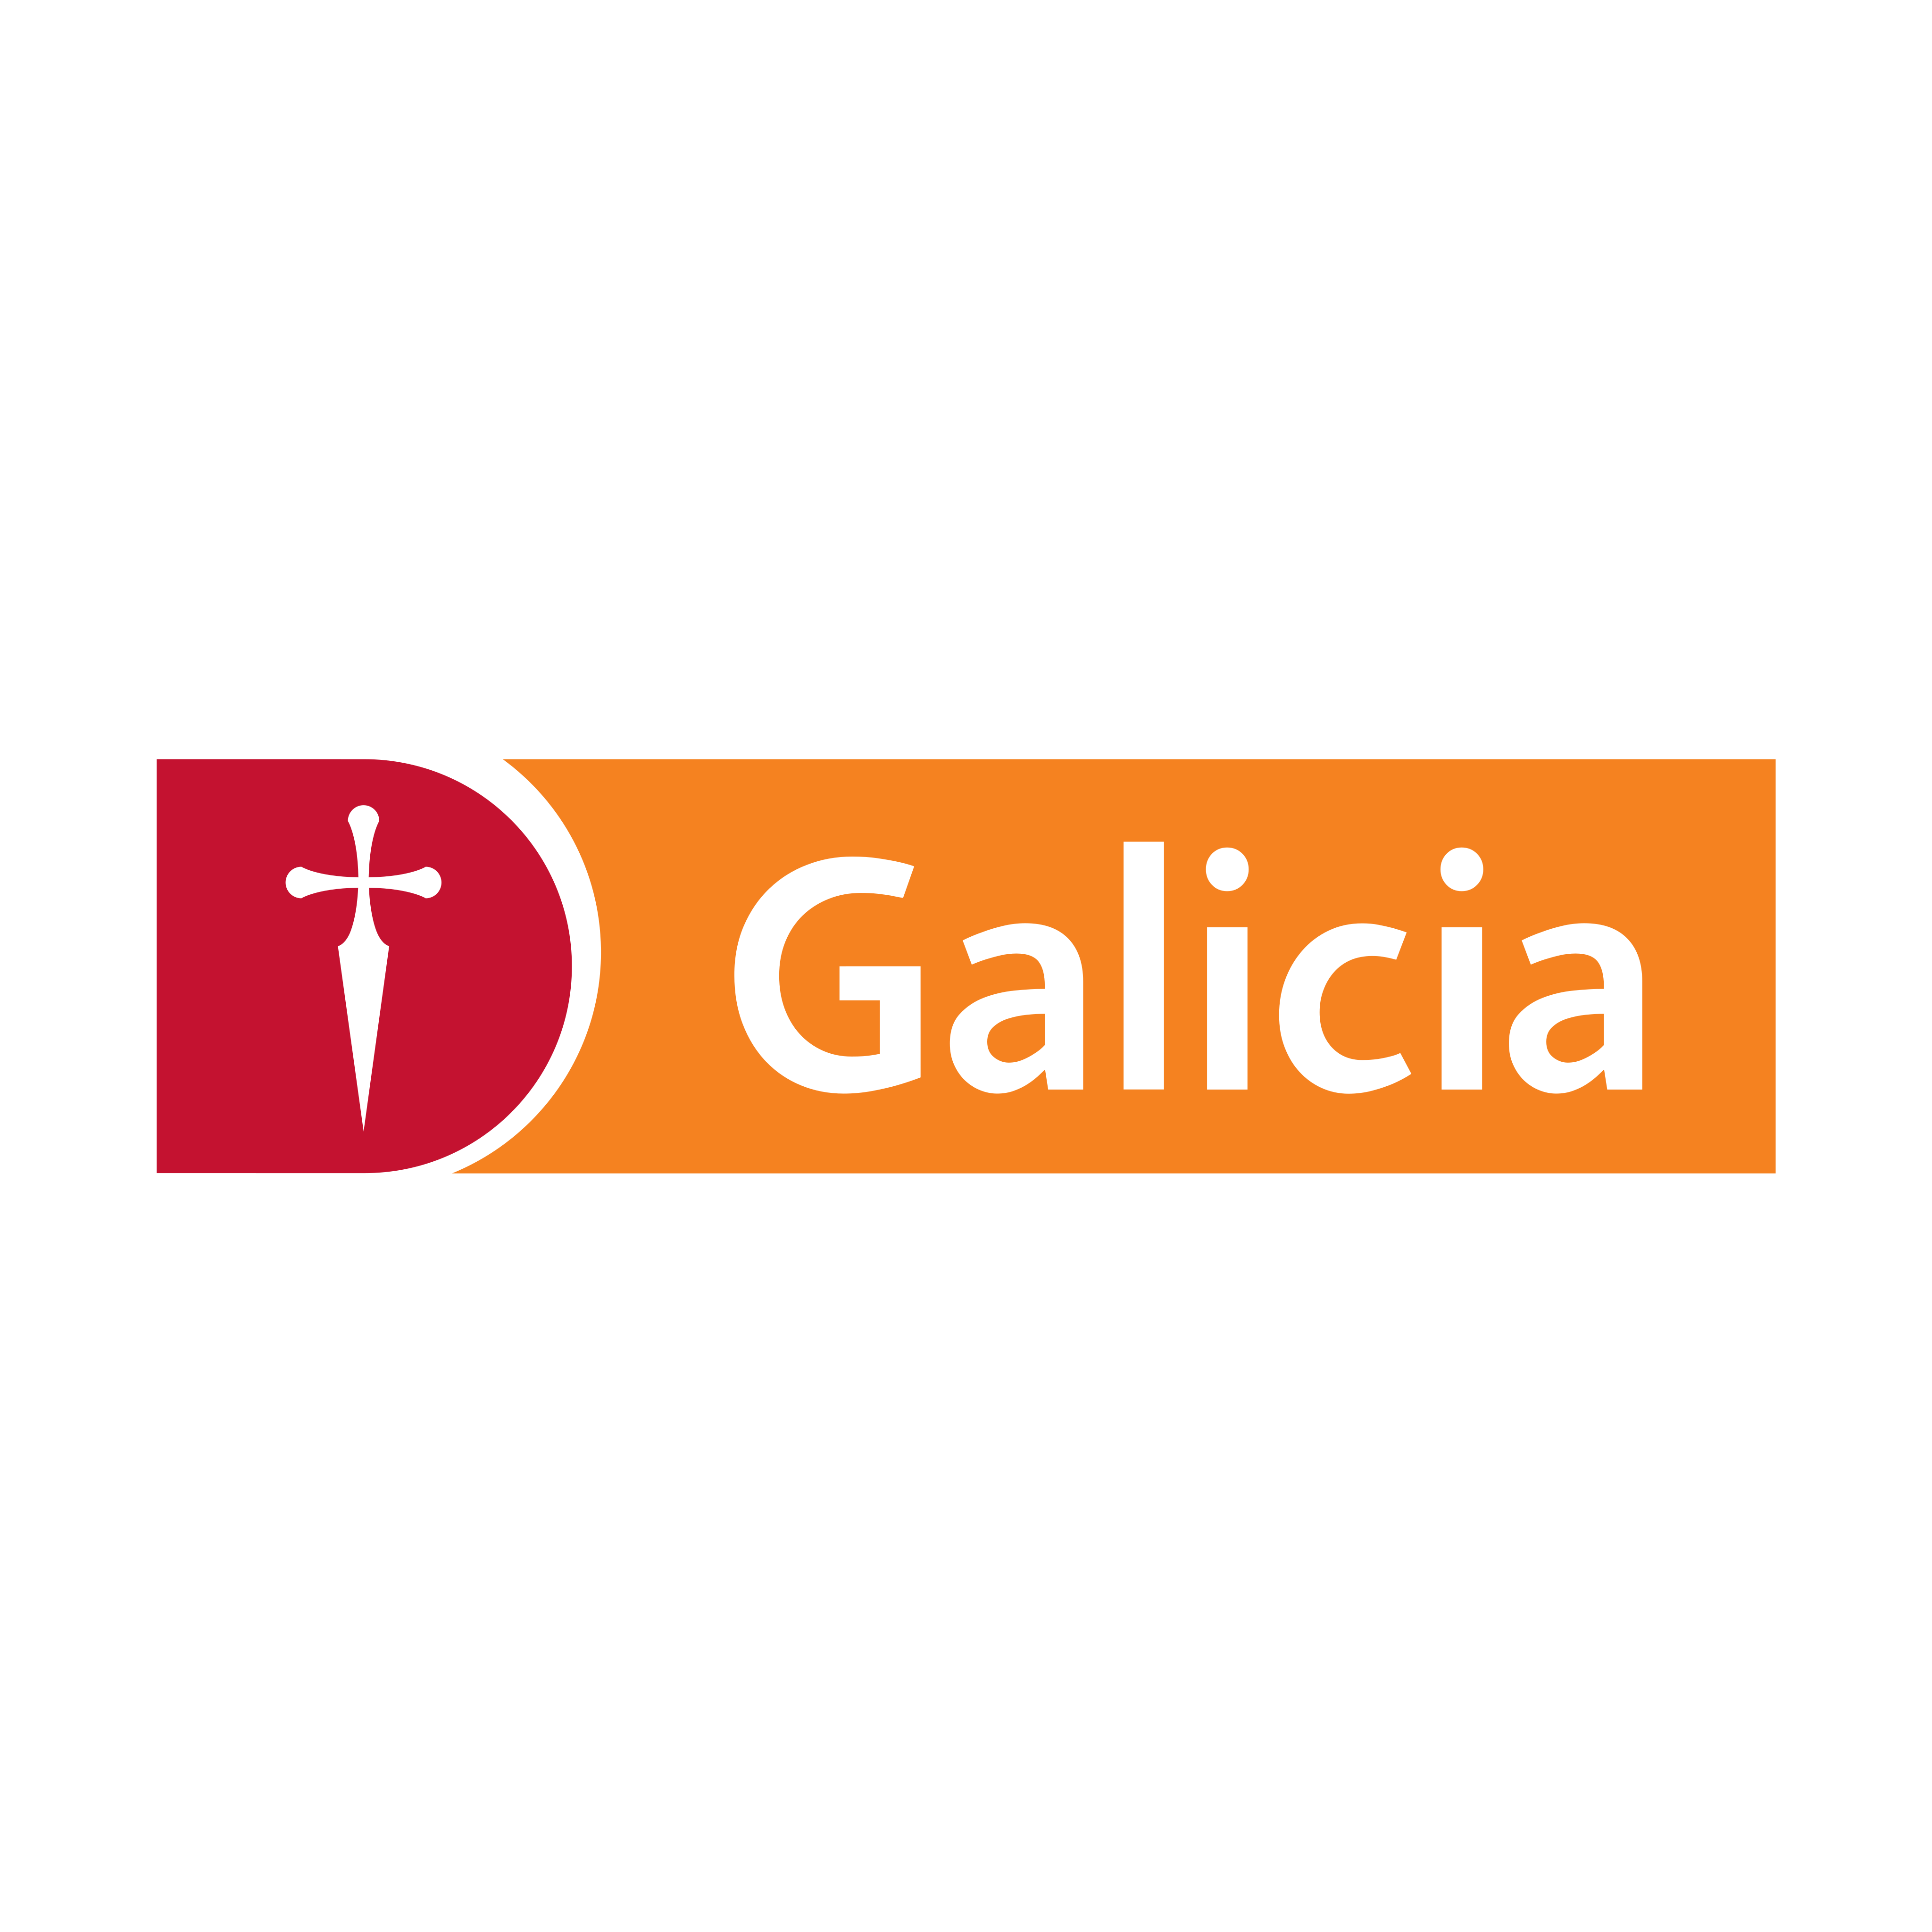 banco galicia logo 0 - Banco Galicia Logo